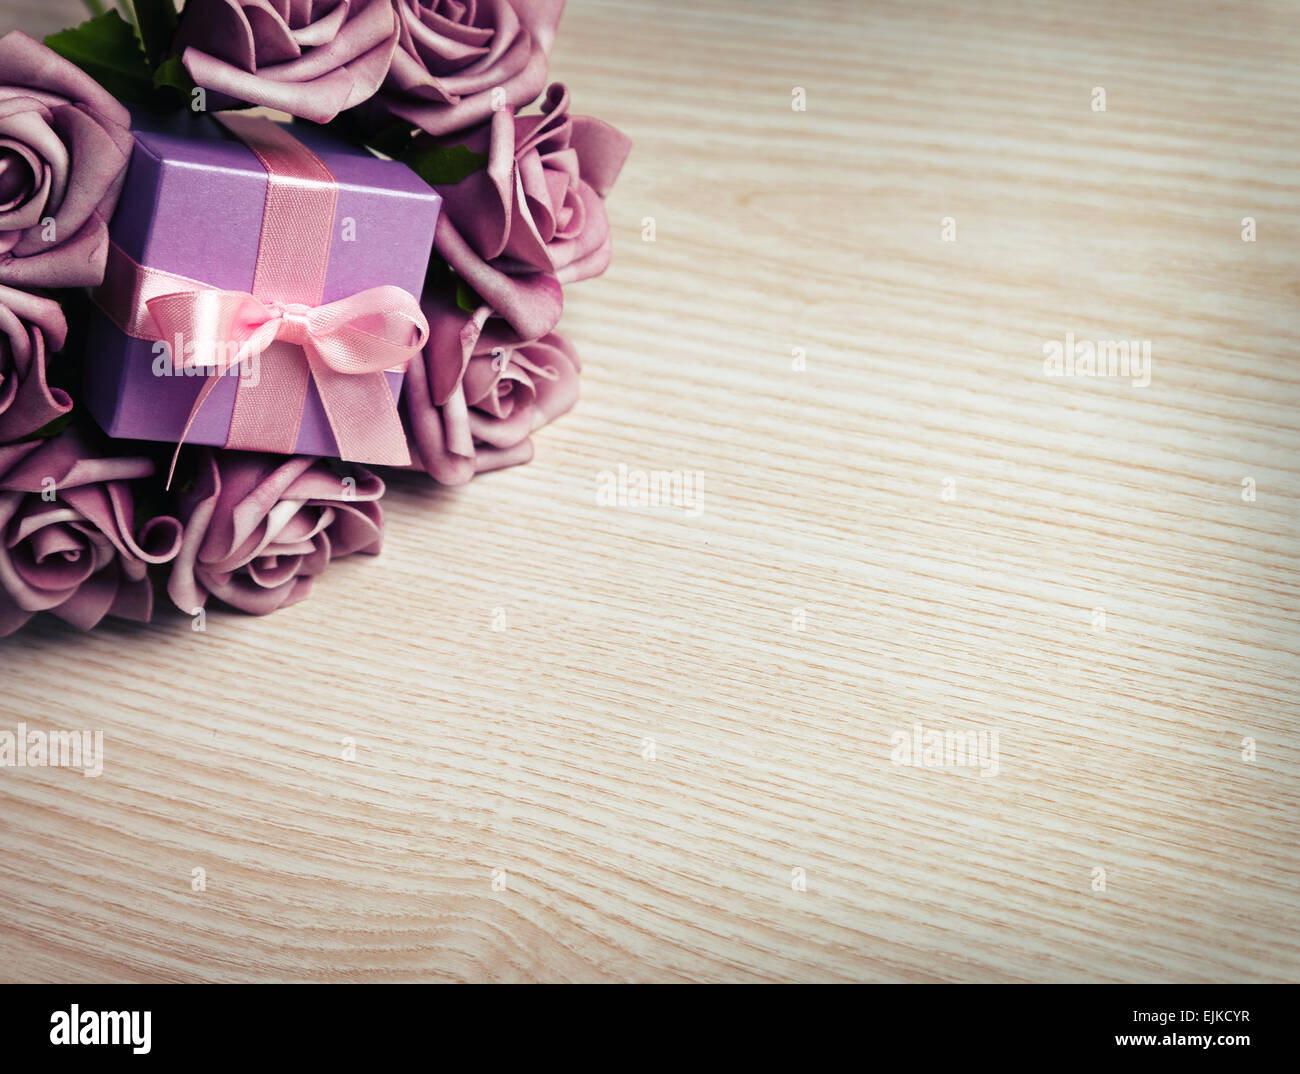 Viola rose e confezione regalo Foto Stock